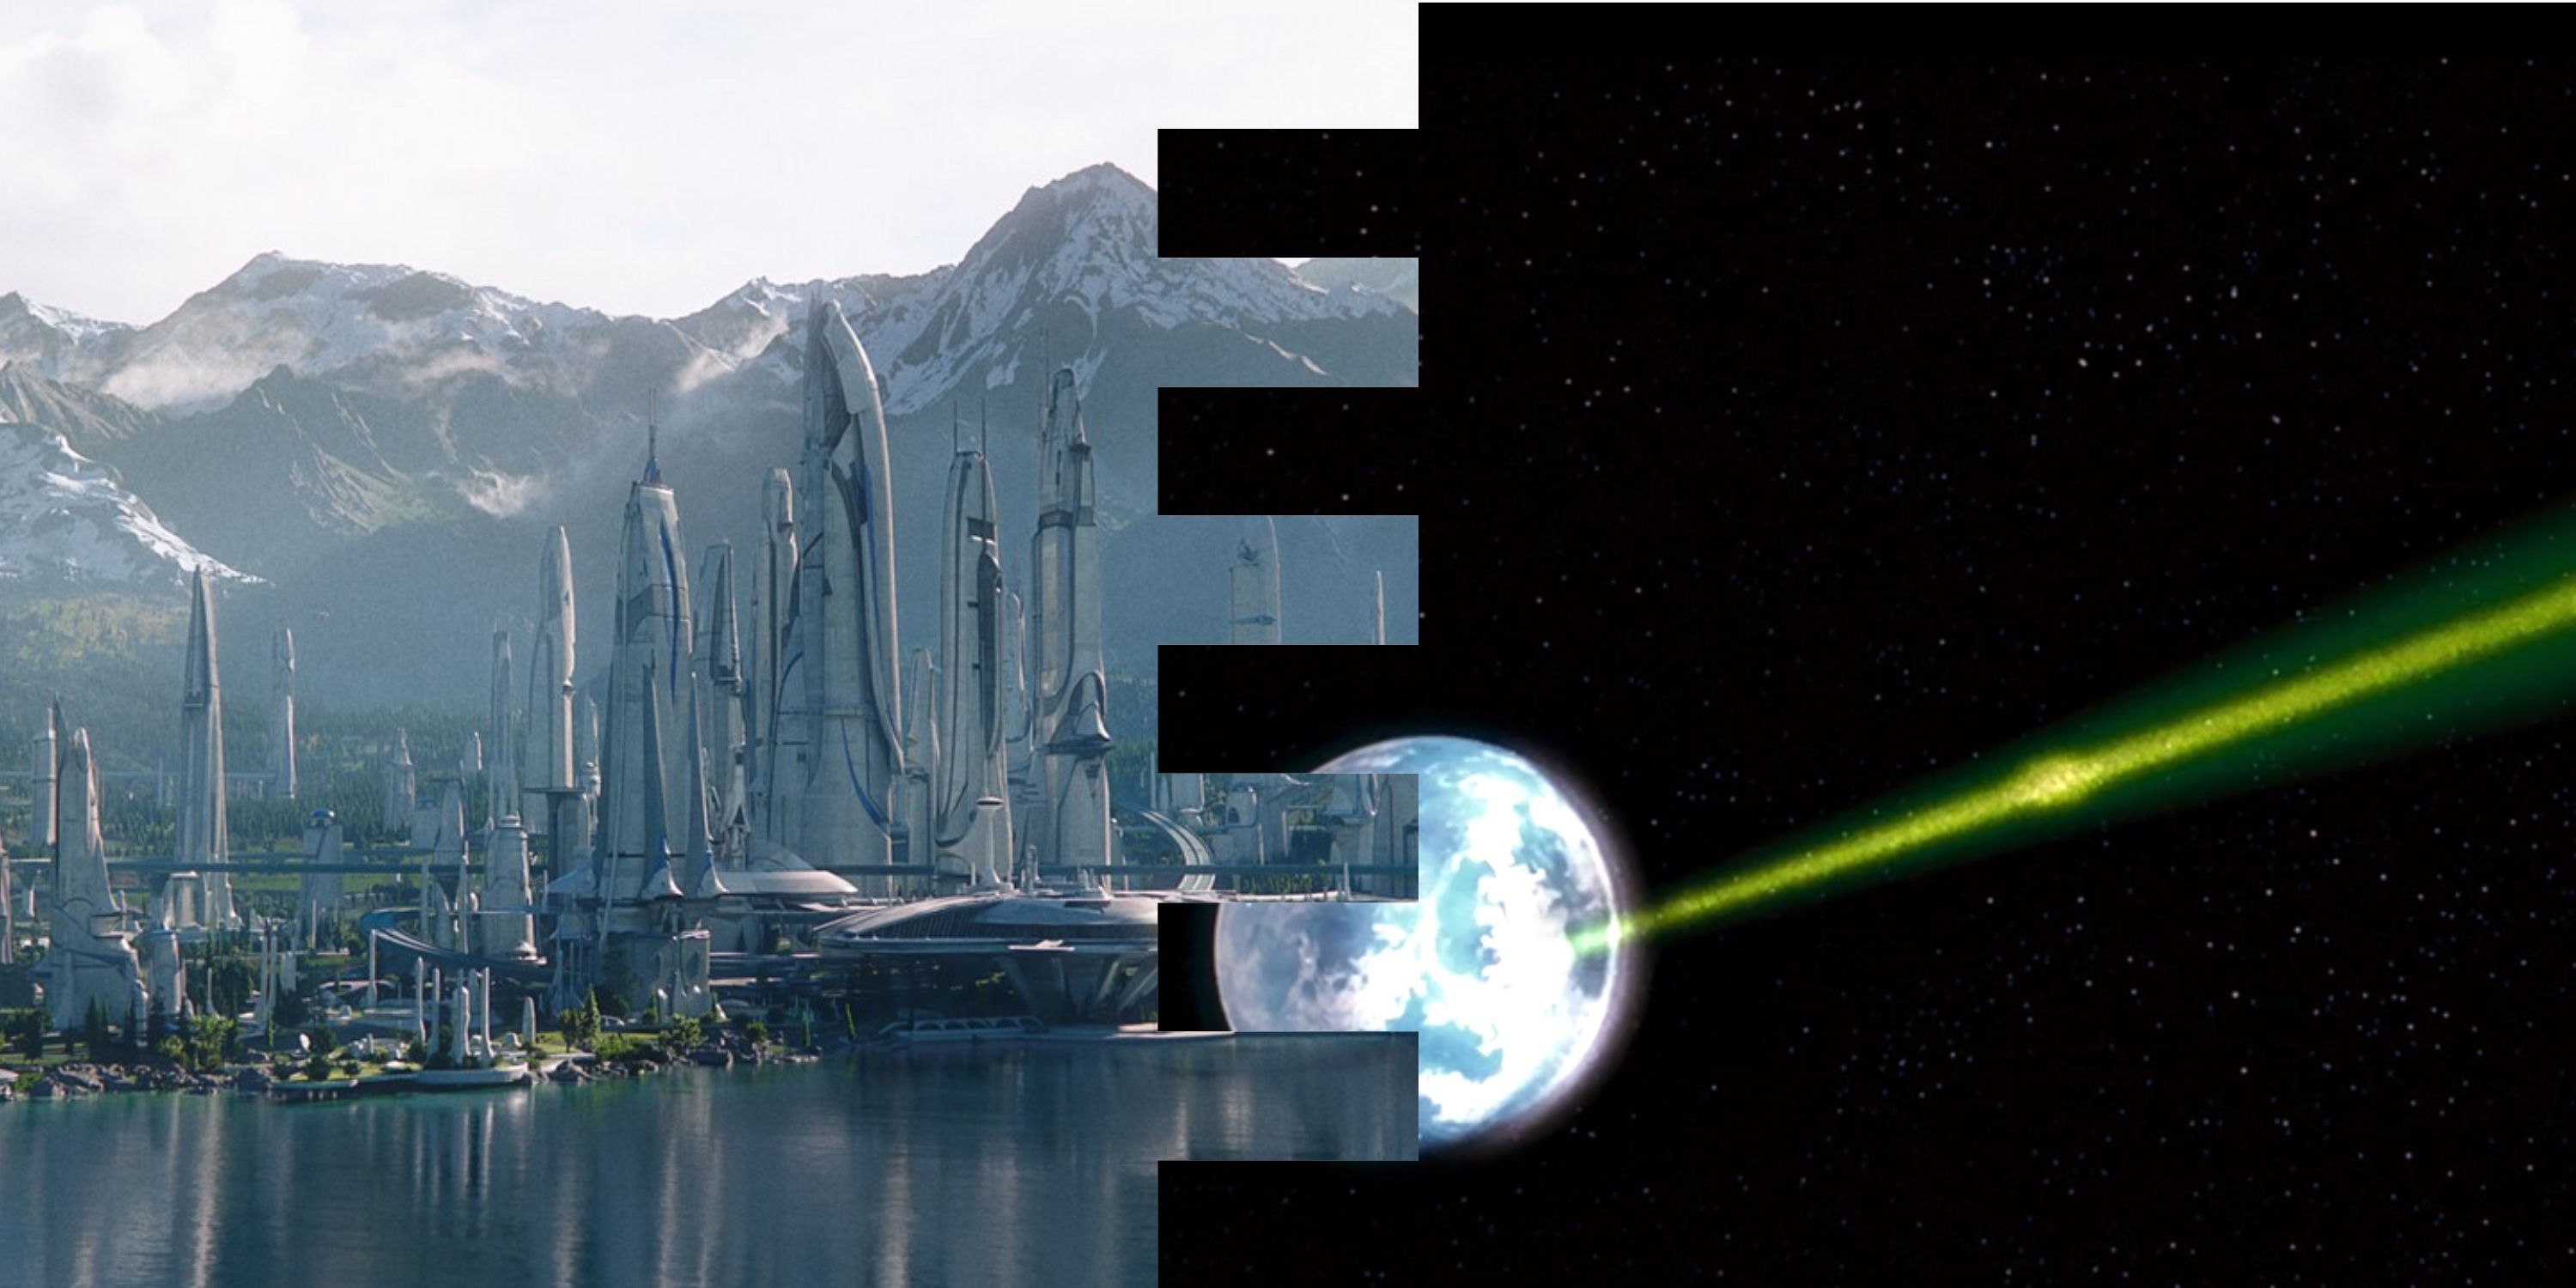 captura de tela da superfície do planeta Alderaan e sendo alvo da Estrela da Morte